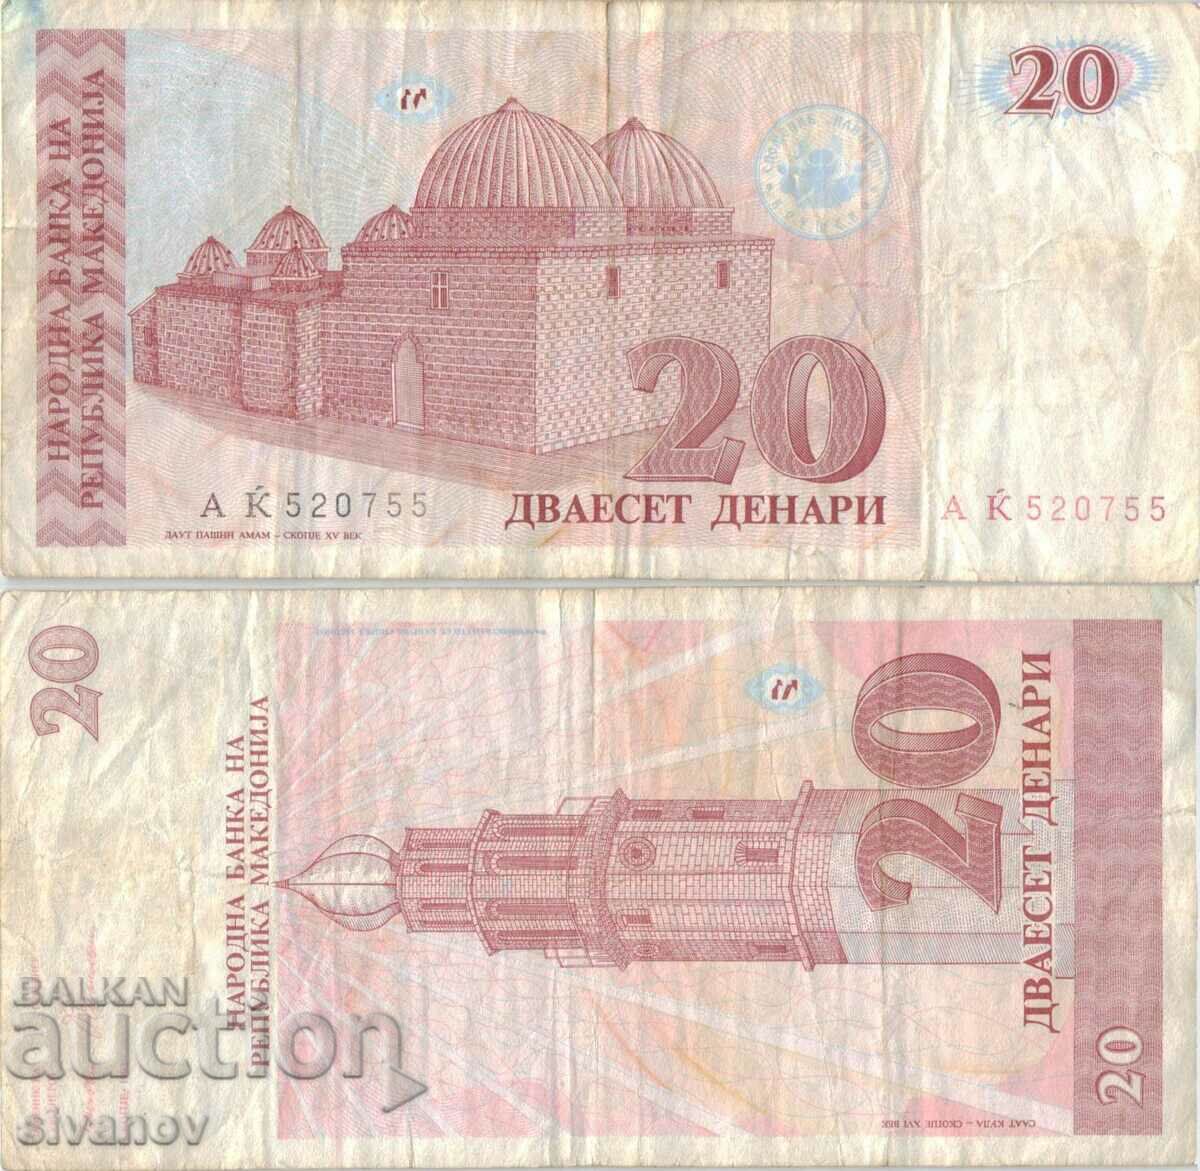 Macedonia 20 denars 1993 banknote #5216